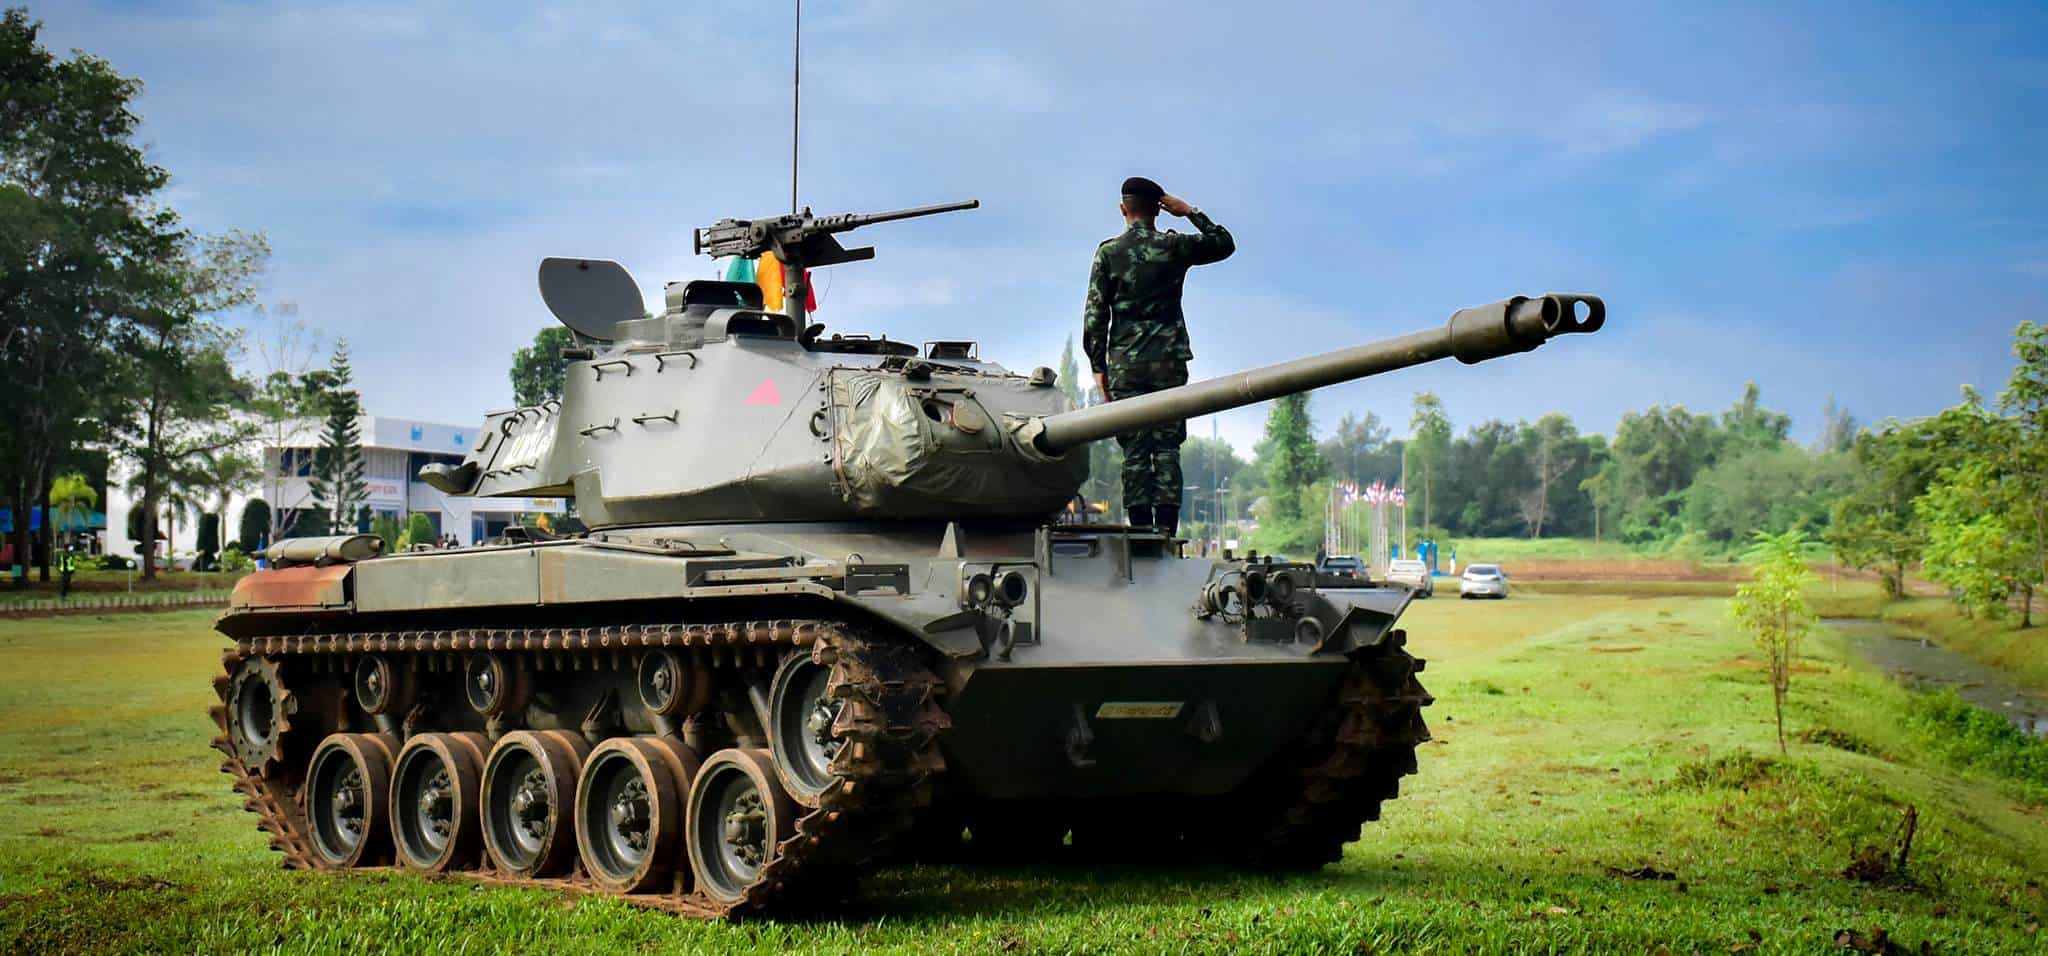 M41A3 Walker Bulldog військових Таїланду. Фото: ЗС Таїланду